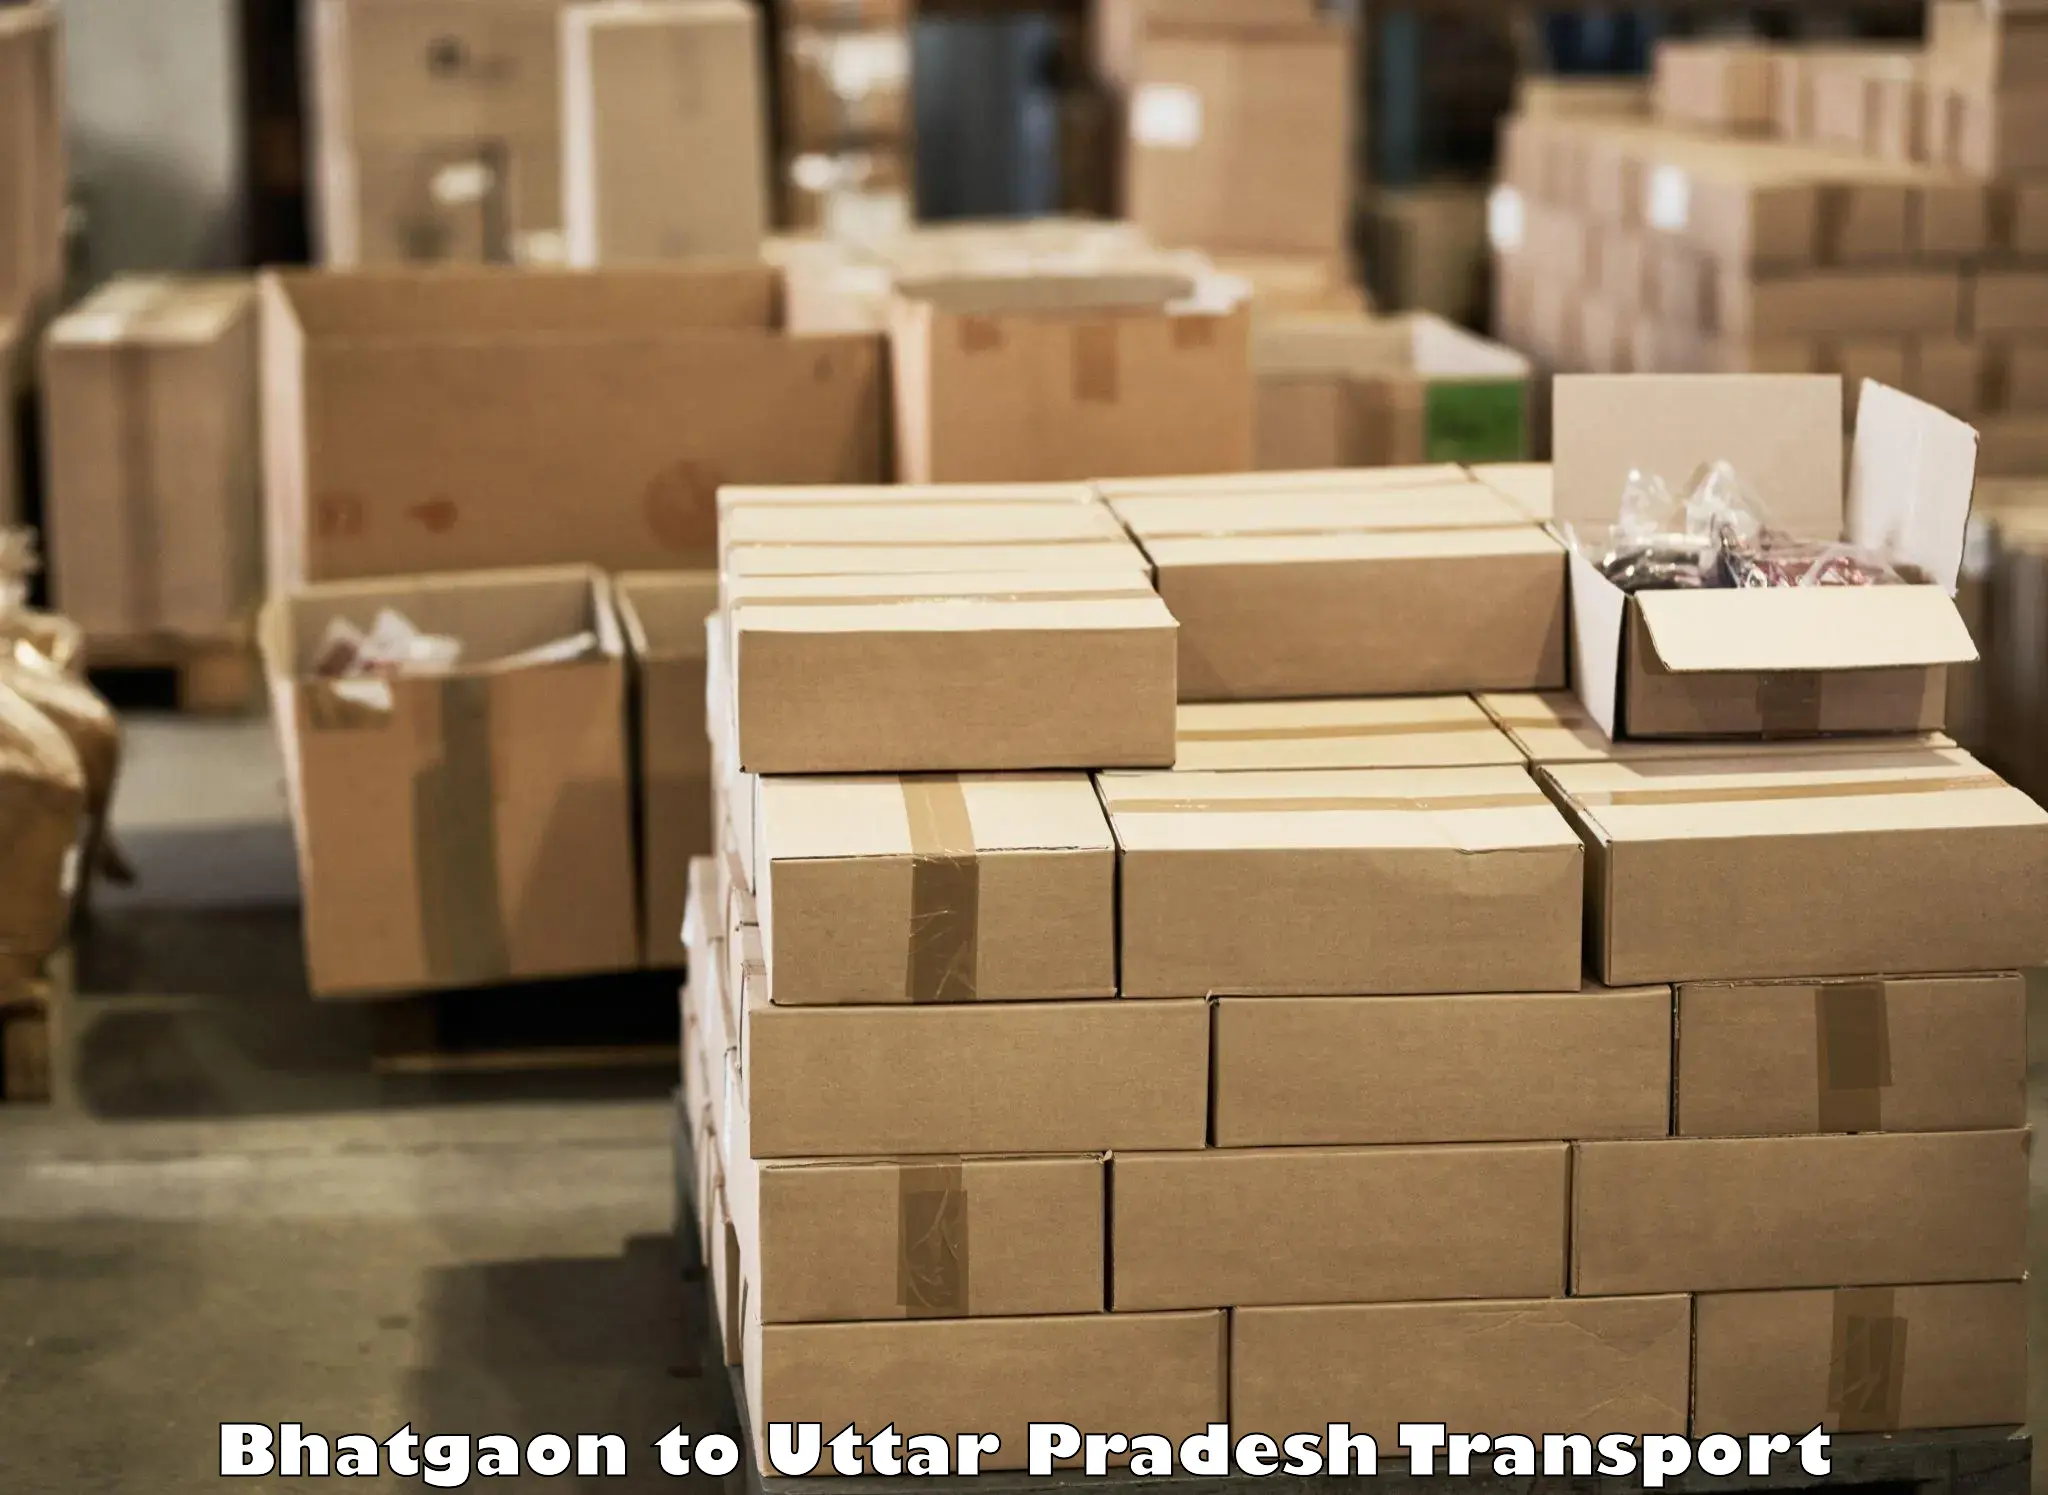 Two wheeler parcel service Bhatgaon to Kairana